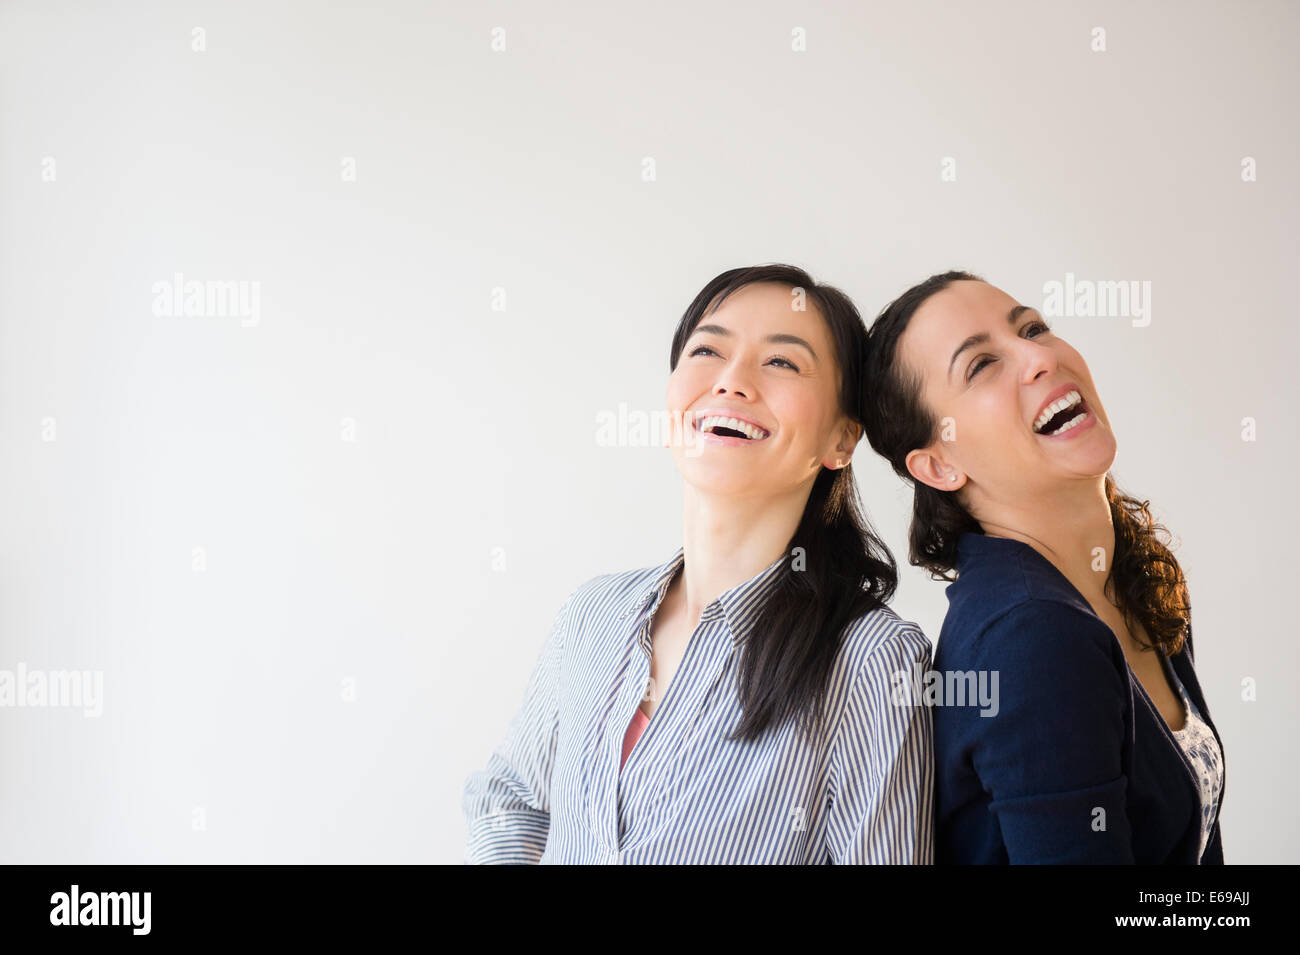 Las mujeres riendo juntos Foto de stock